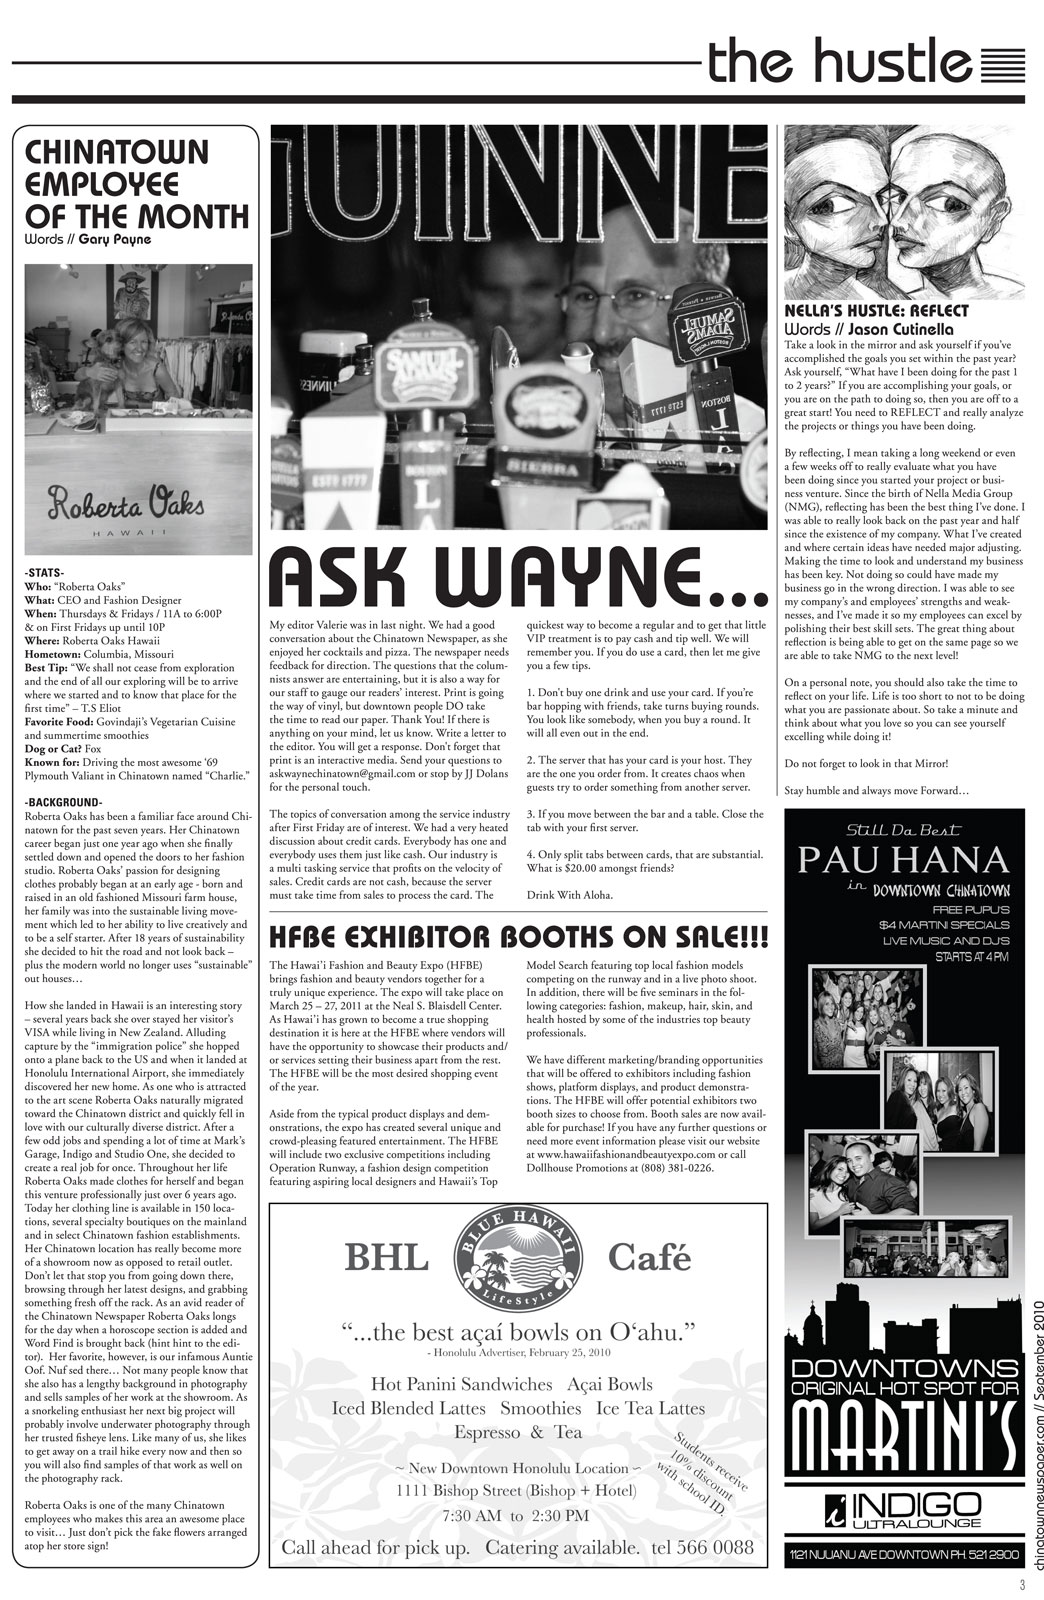 Chinatown Newspaper september 2010 3